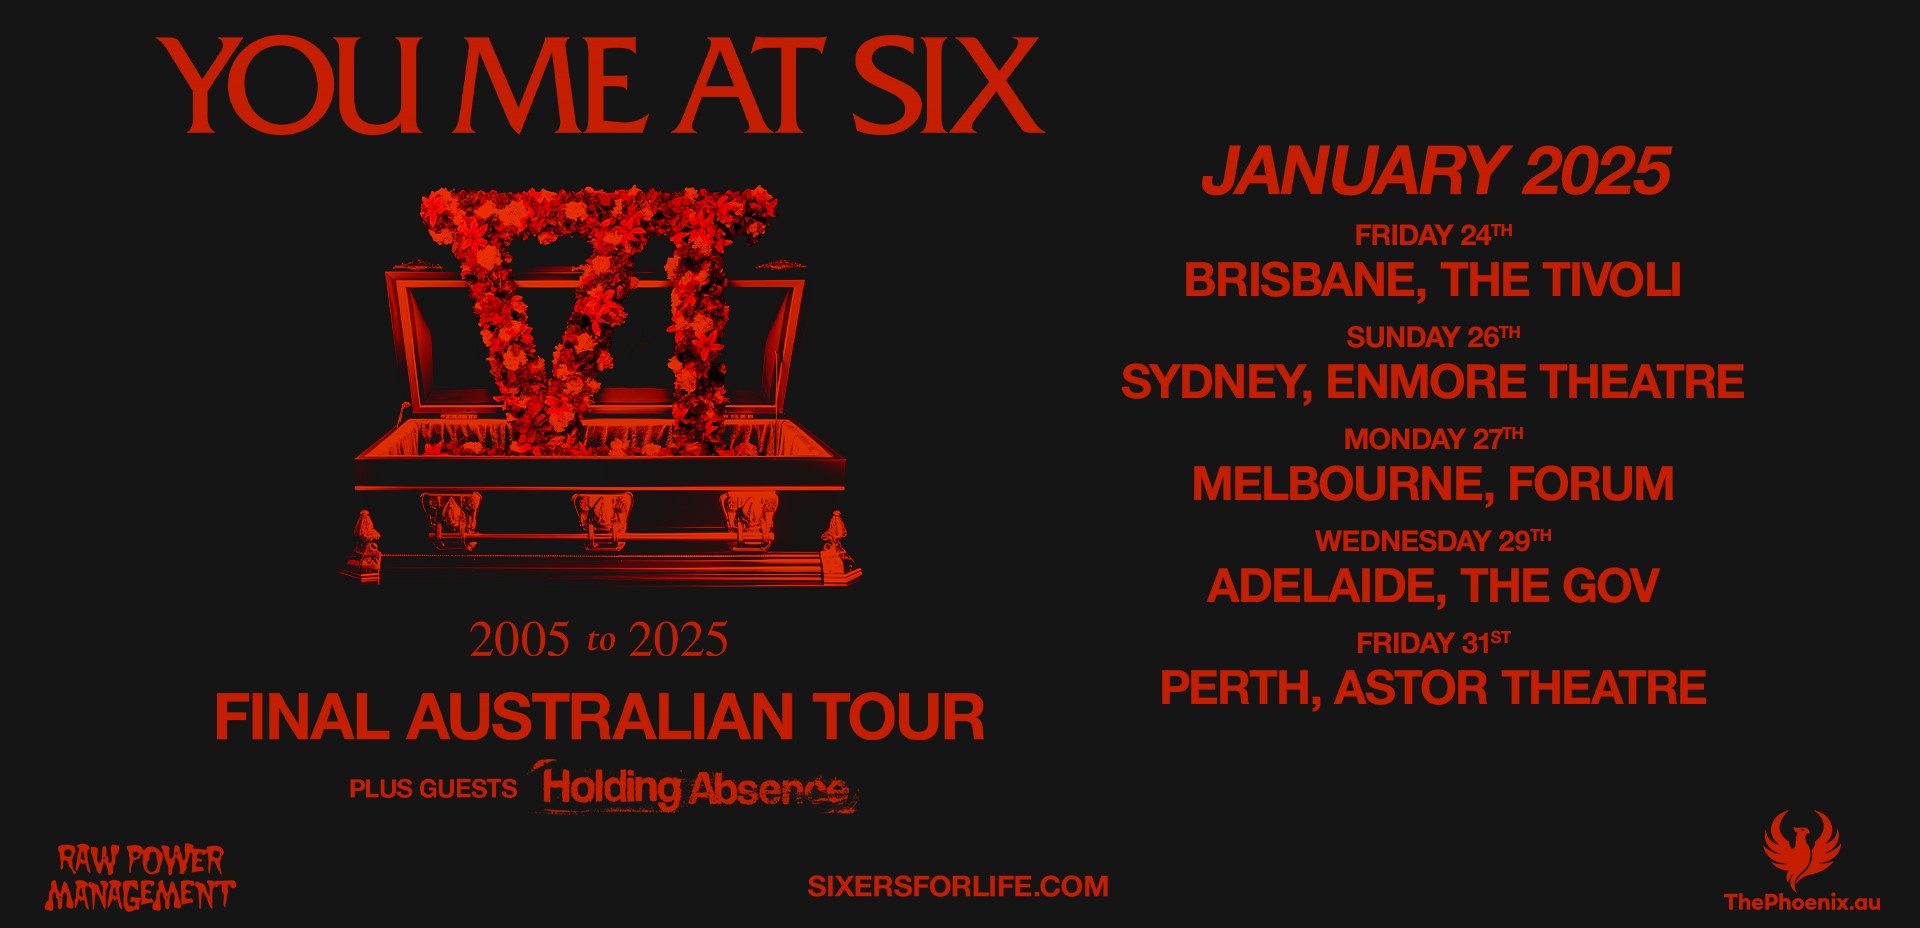 tenacious d tour australia 2023